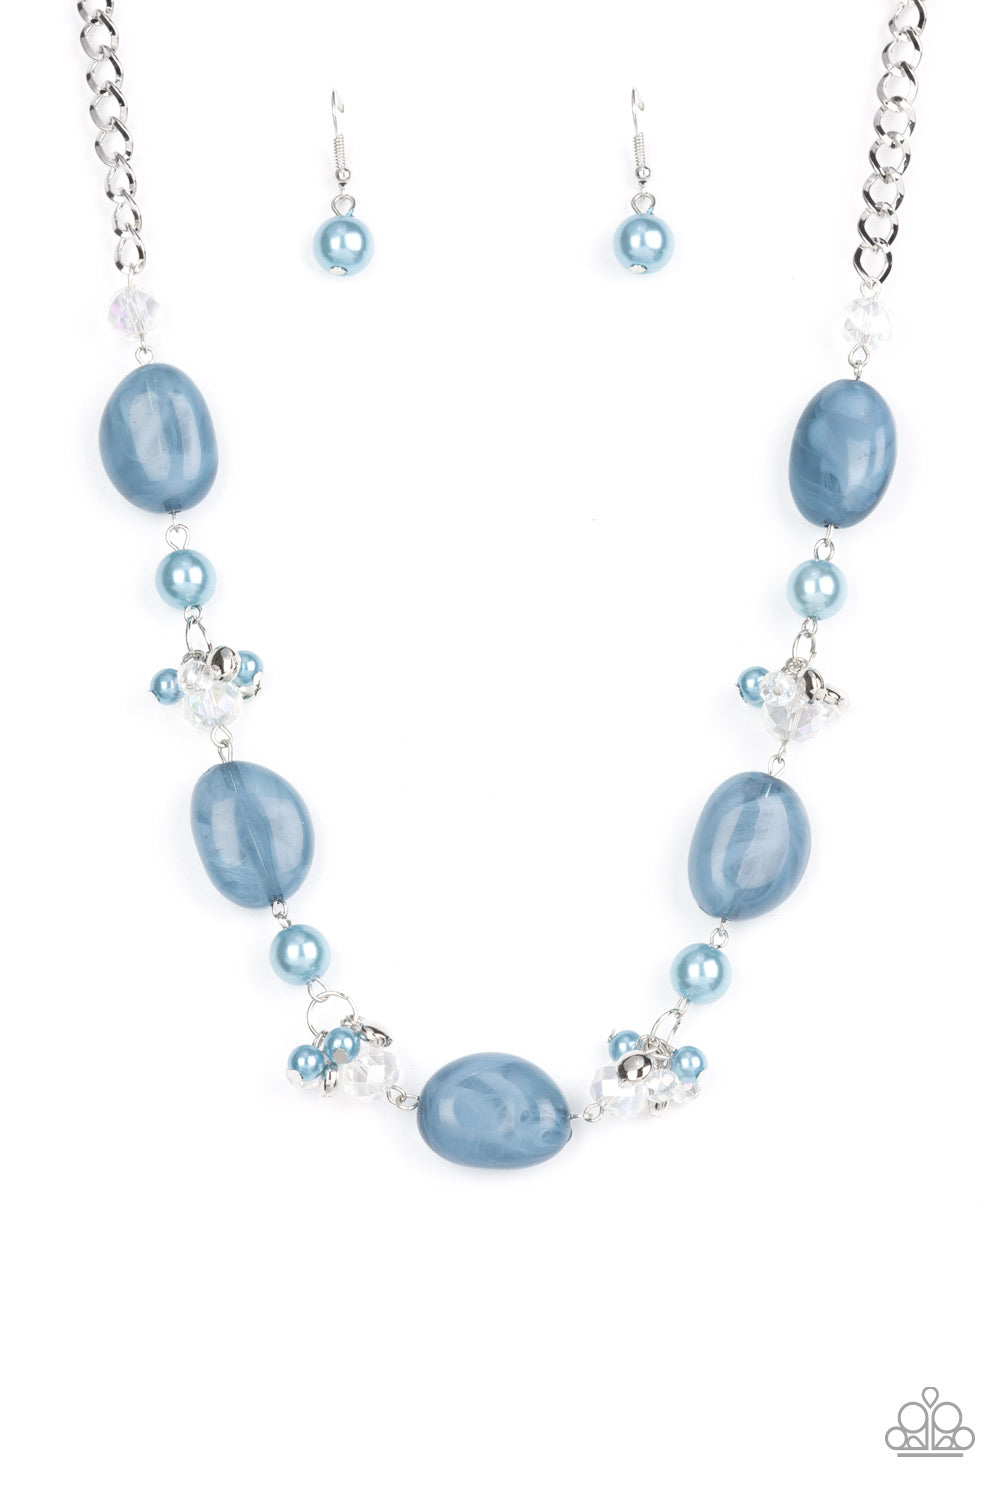 The Top TENACIOUS - Blue Faux Stones Necklace - Paparazzi Accessories